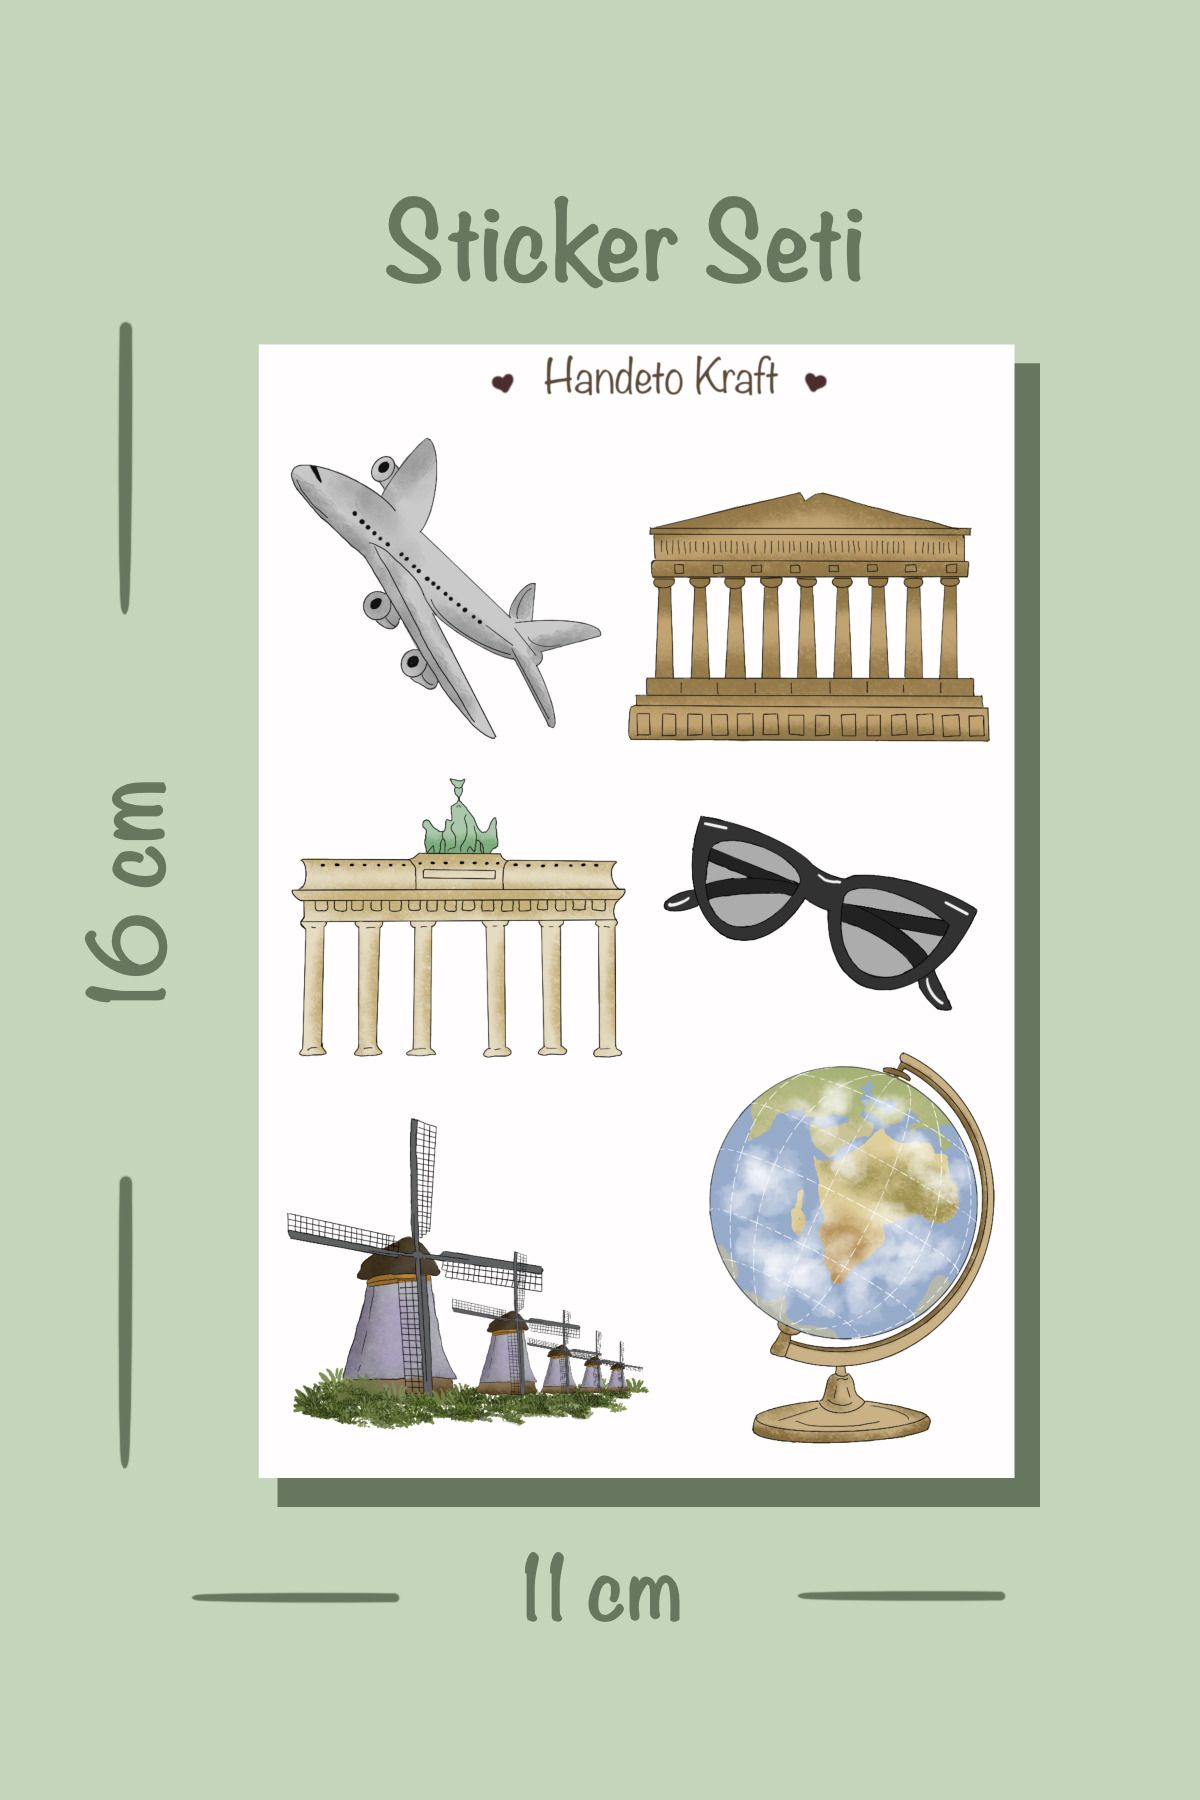 Handeto Kraft Ülkeler & Seyahat Temalı Valiz Sticker Seti(11X16CM,PLASTİK YAPIŞKANLI KAĞIT, VALİZ, LAPTOP,TELEFON)